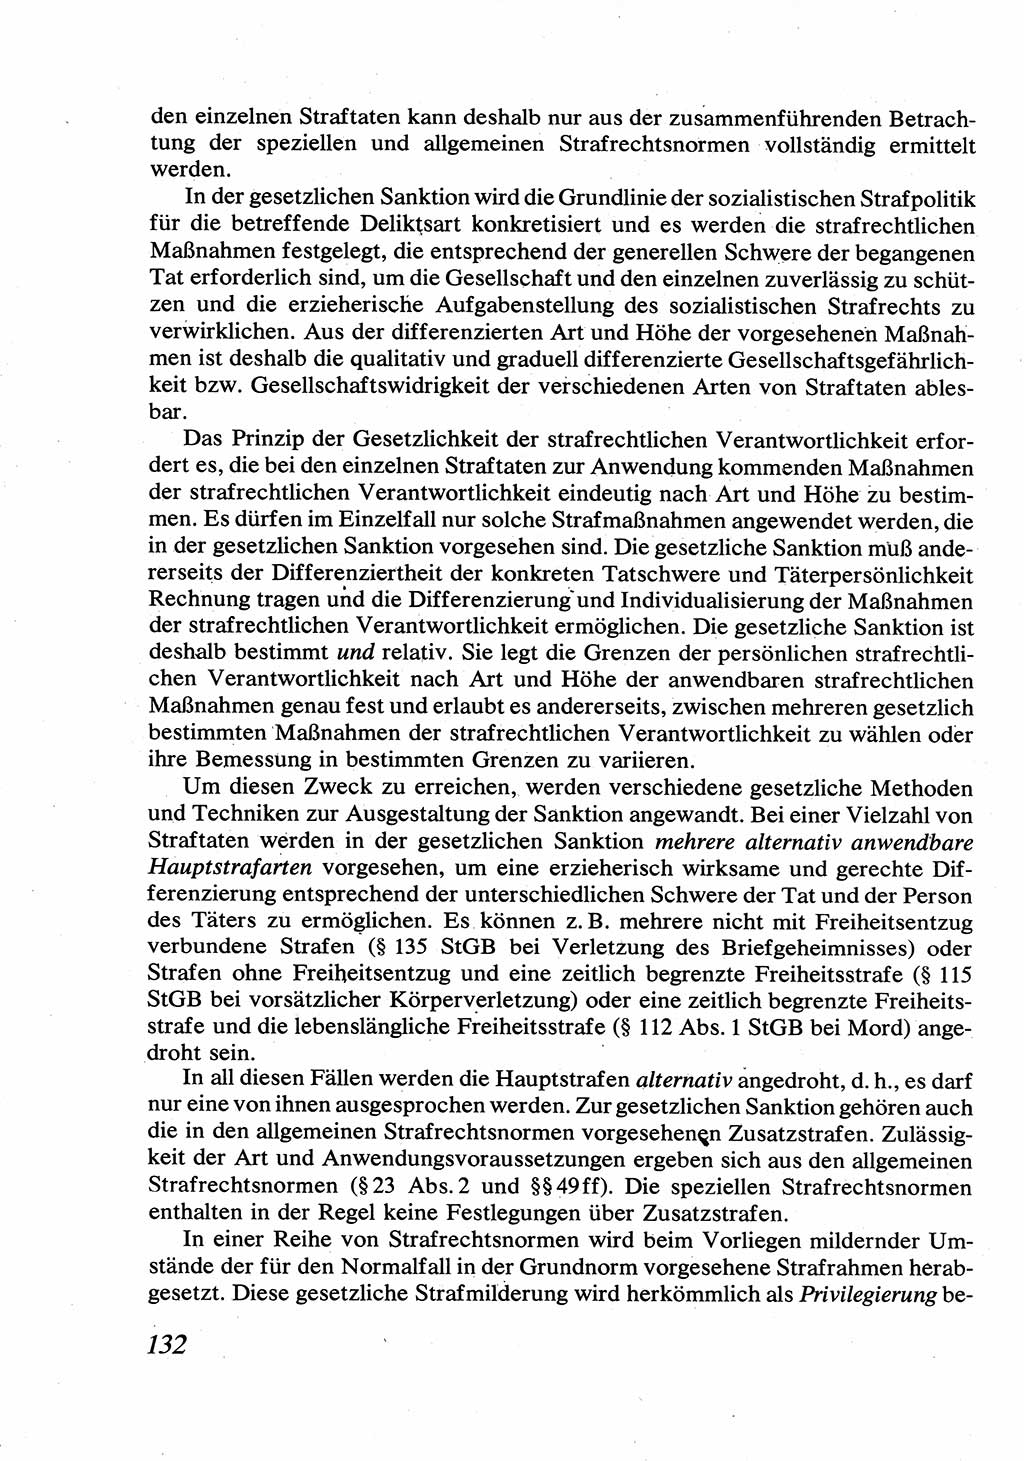 Strafrecht [Deutsche Demokratische Republik (DDR)], Allgemeiner Teil, Lehrbuch 1976, Seite 132 (Strafr. DDR AT Lb. 1976, S. 132)